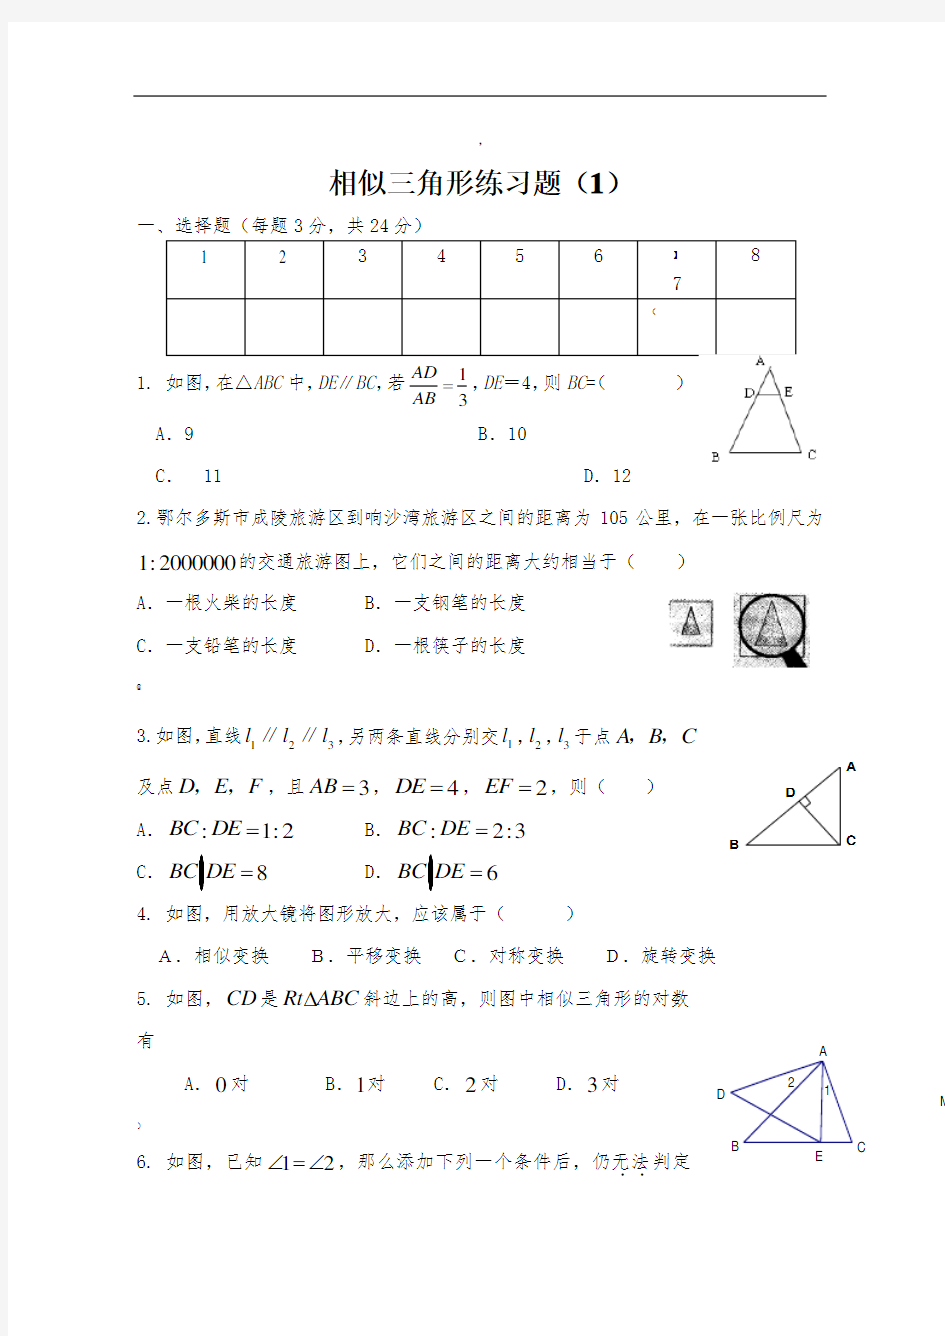 相似三角形练习题(1)